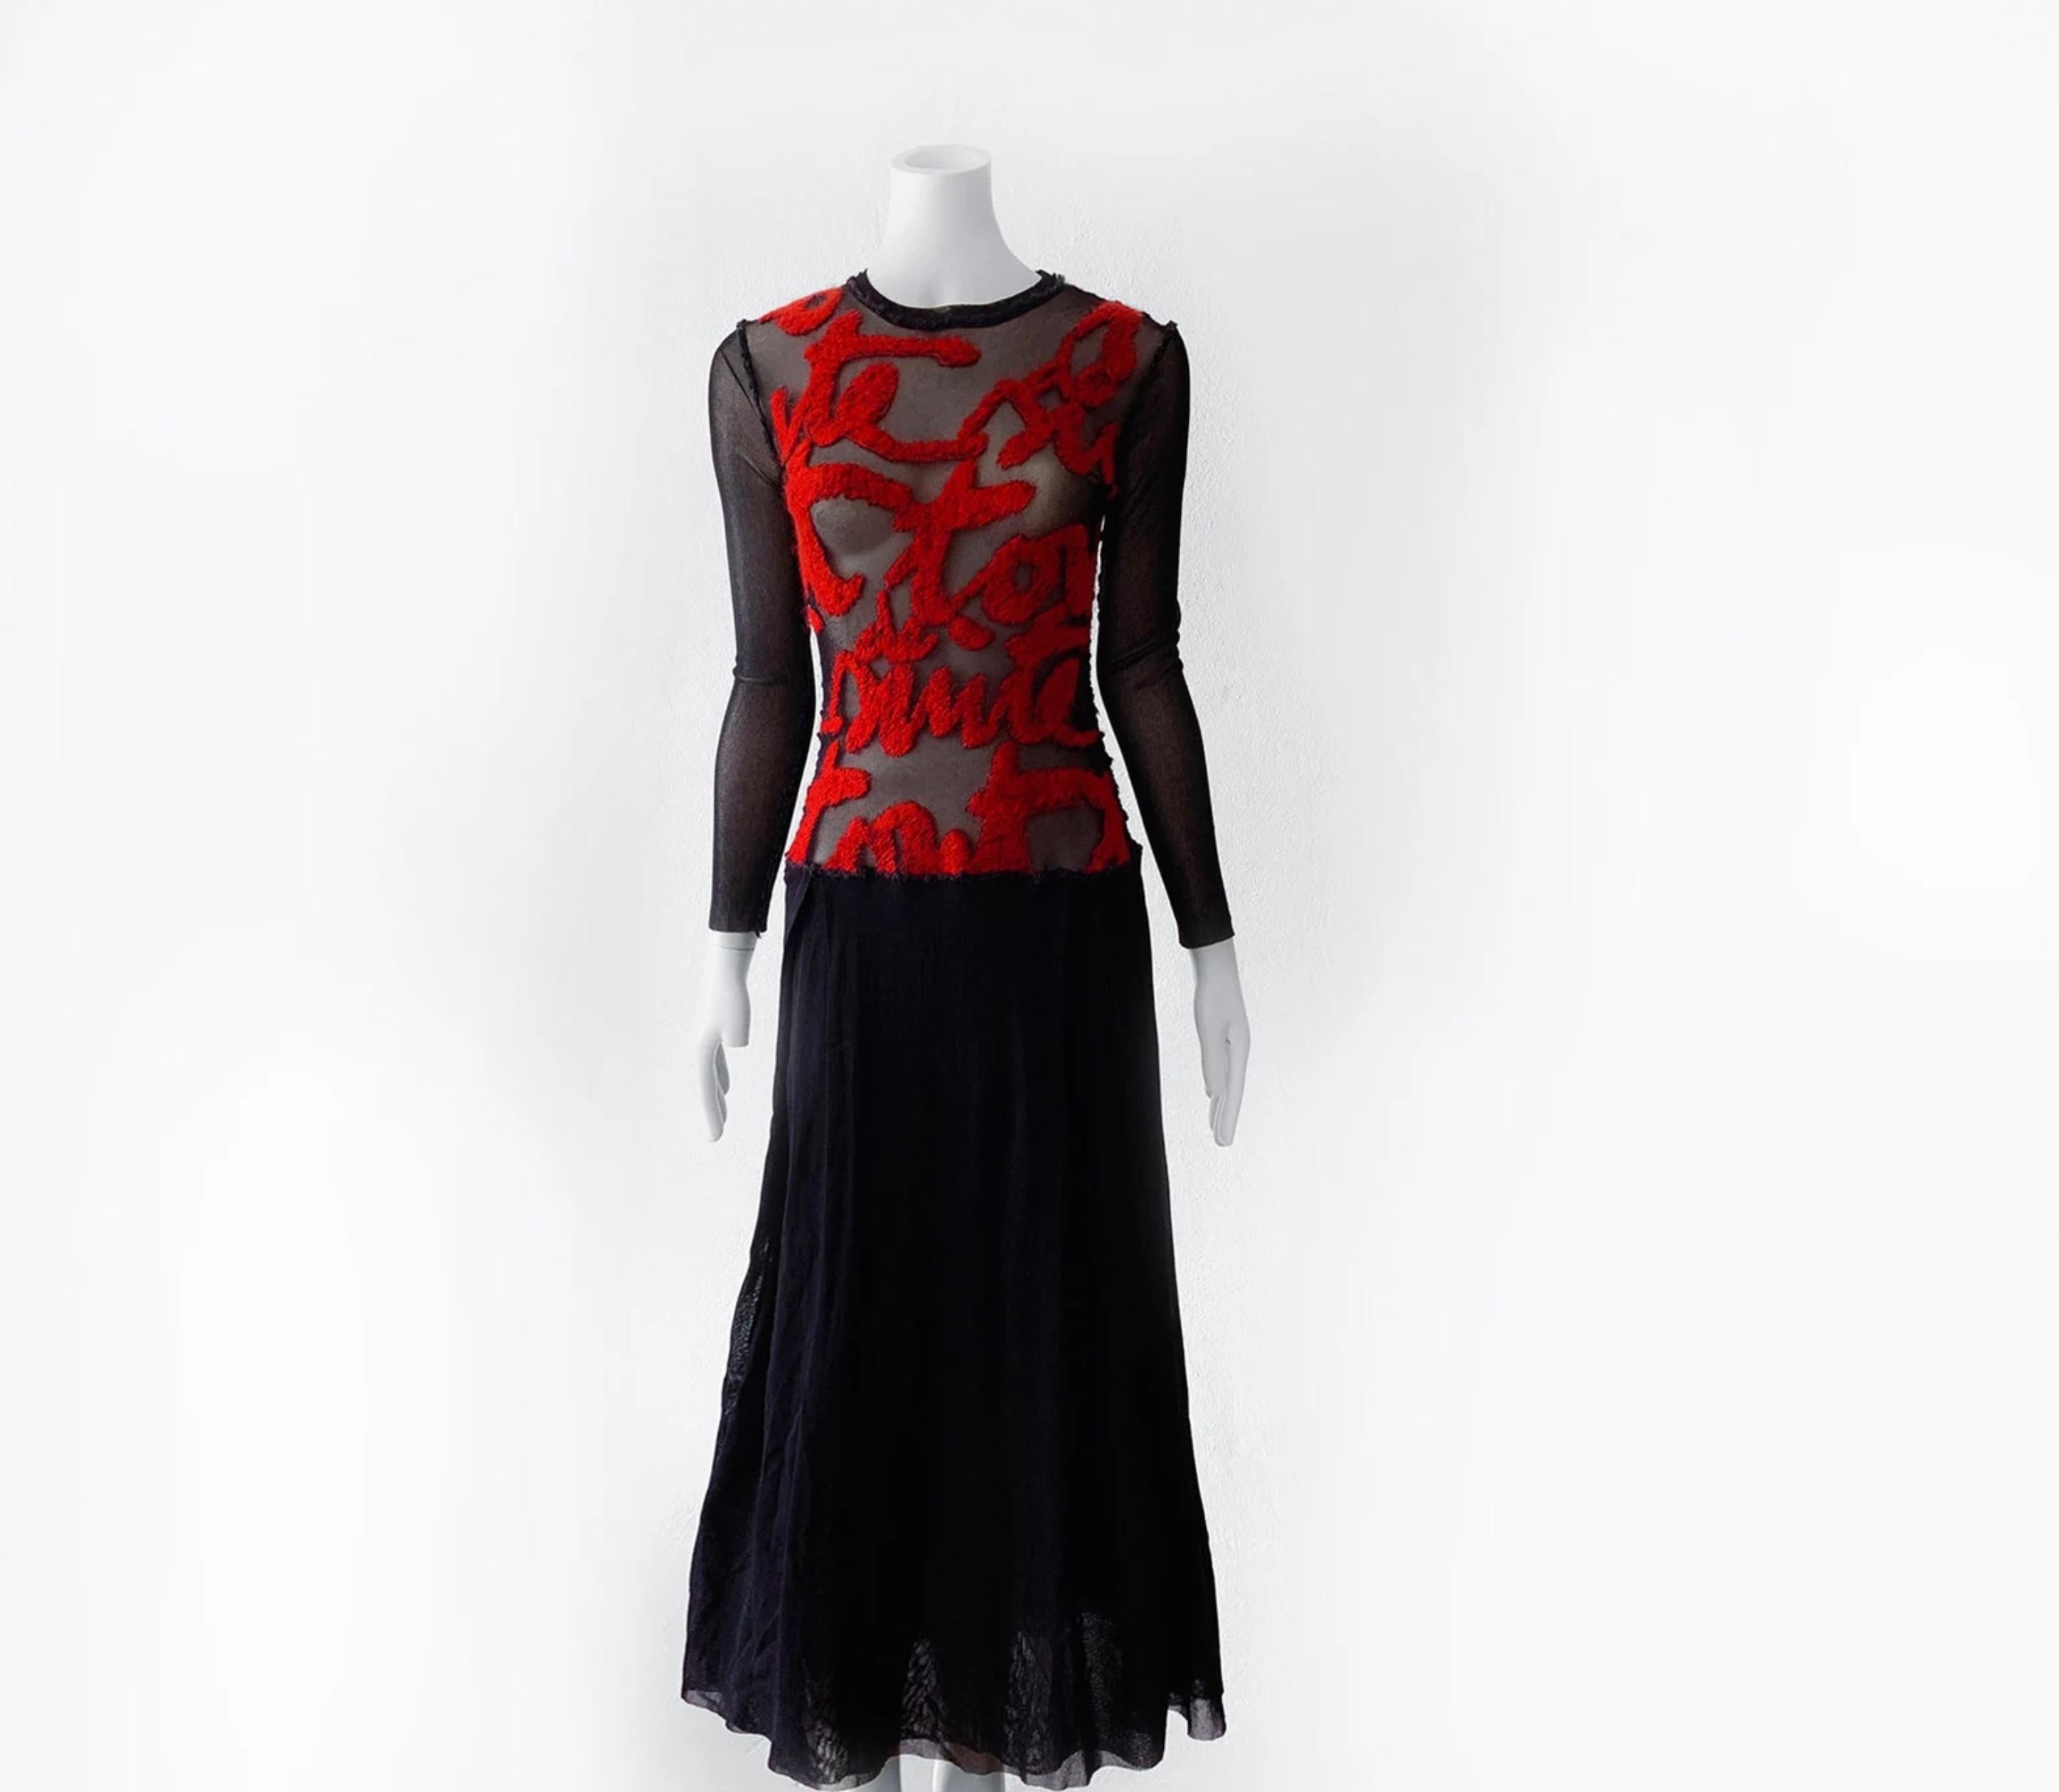 
Superbe robe iconique de Jean Paul Gaultier. Robe noire en maille semi-transparente avec manches longues et jupe à double épaisseur.
Écriture française en rouge foncé sur le devant. Il s'agit d'une icône typique de Gaultier de la fin des années 90,